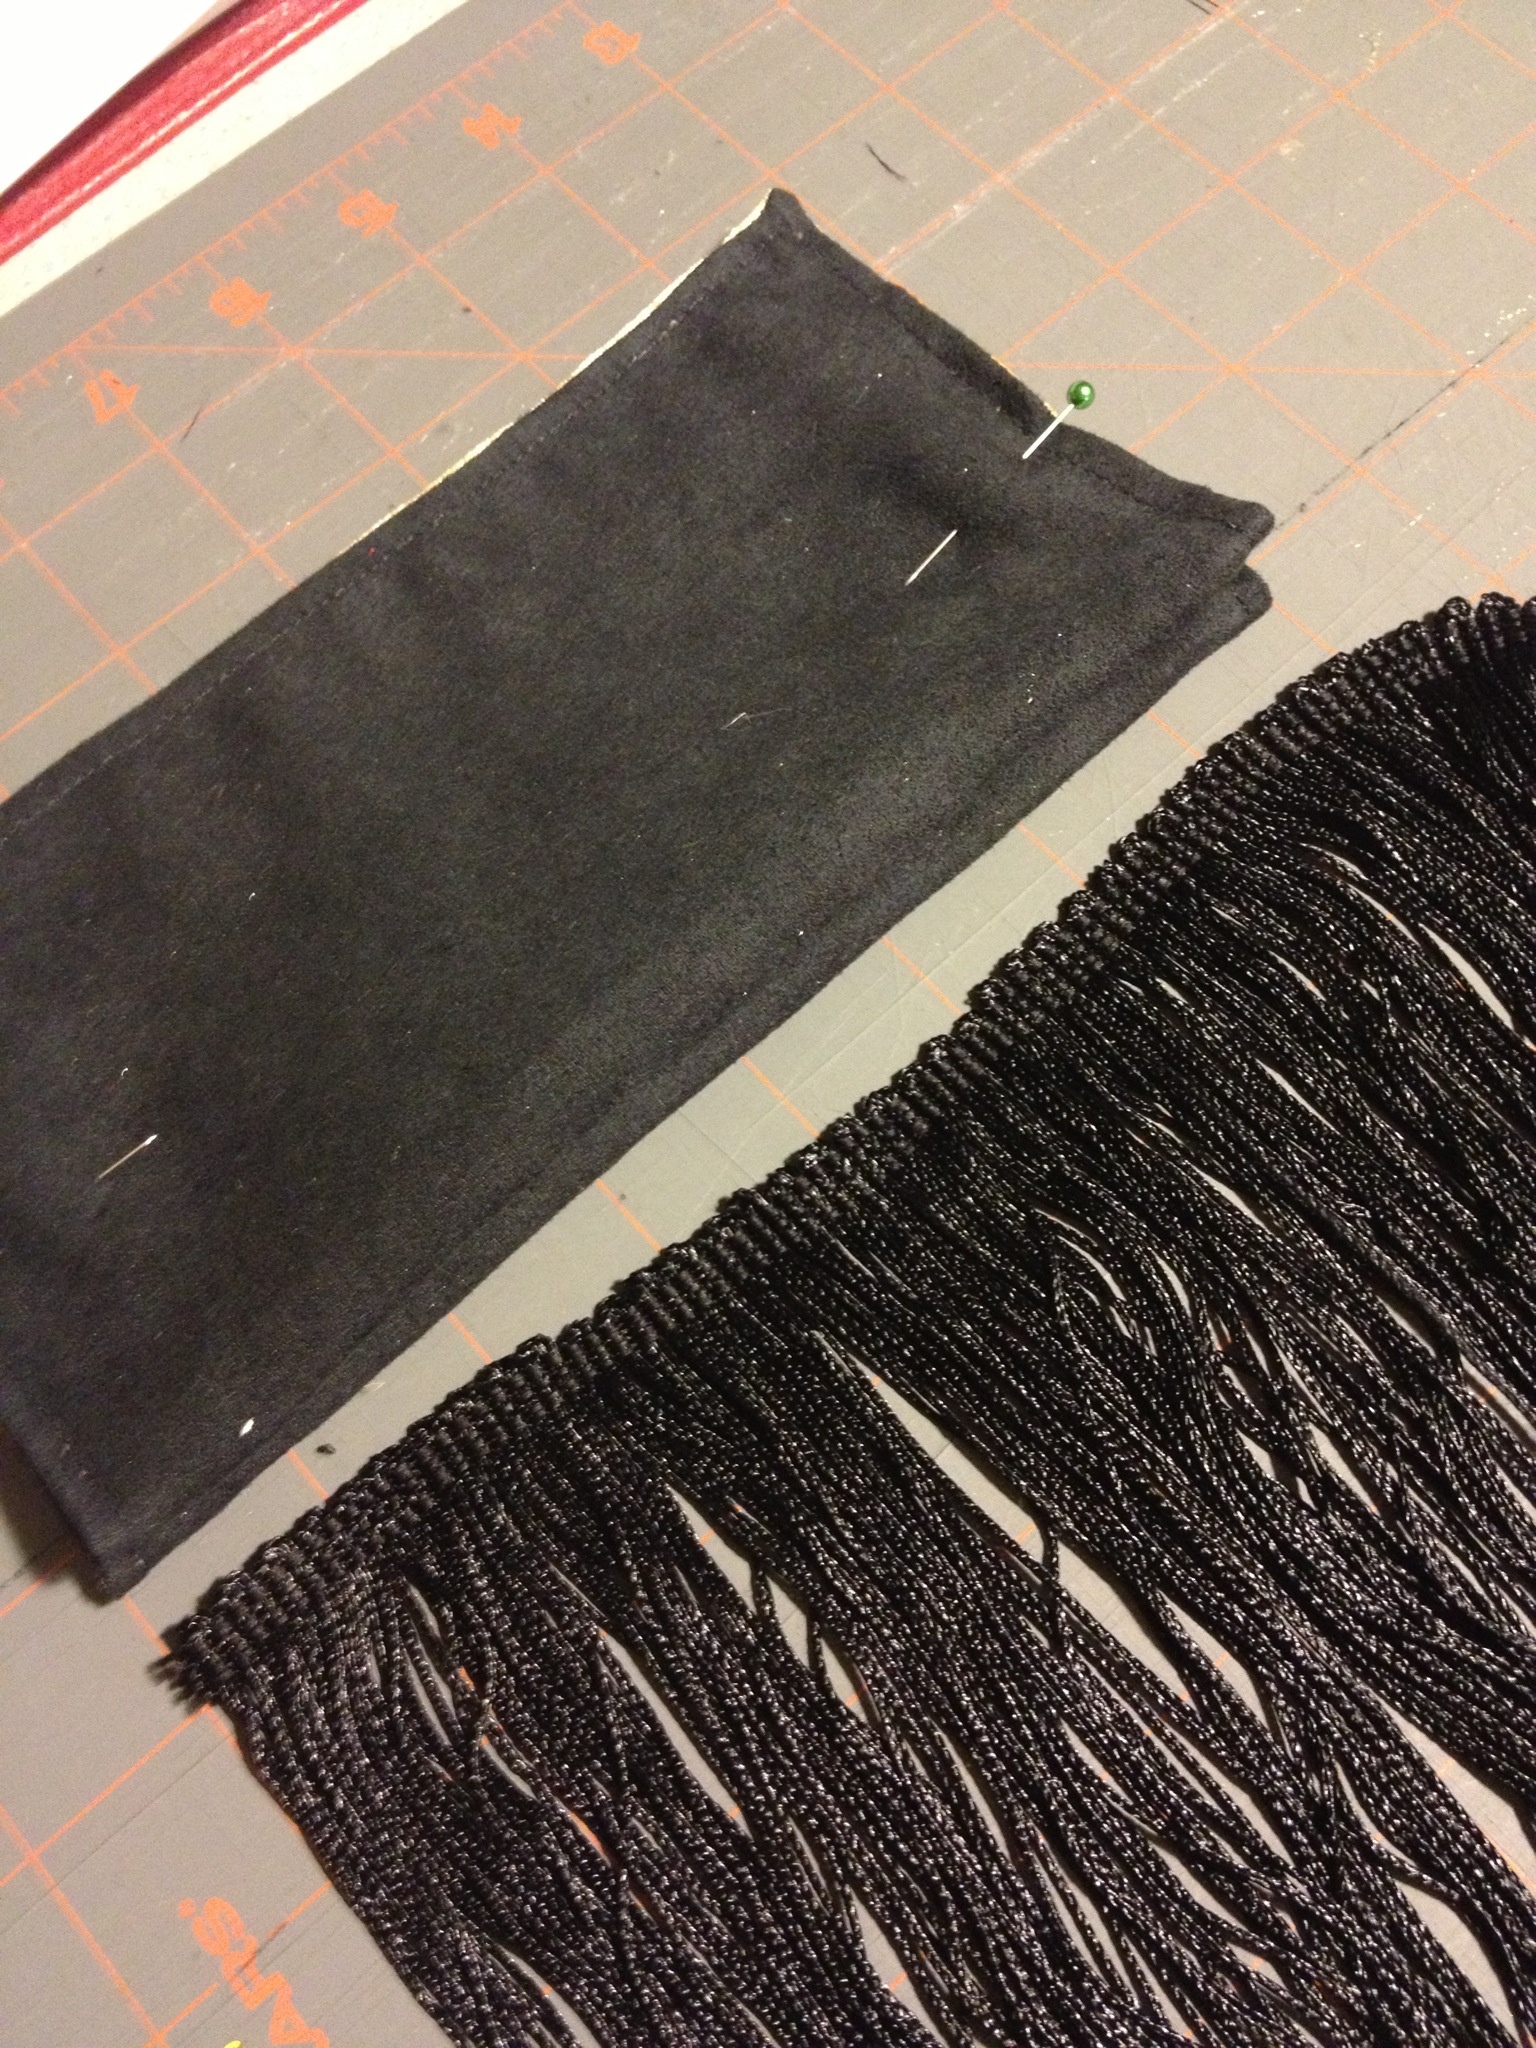 Black Brushed Satin Fabric